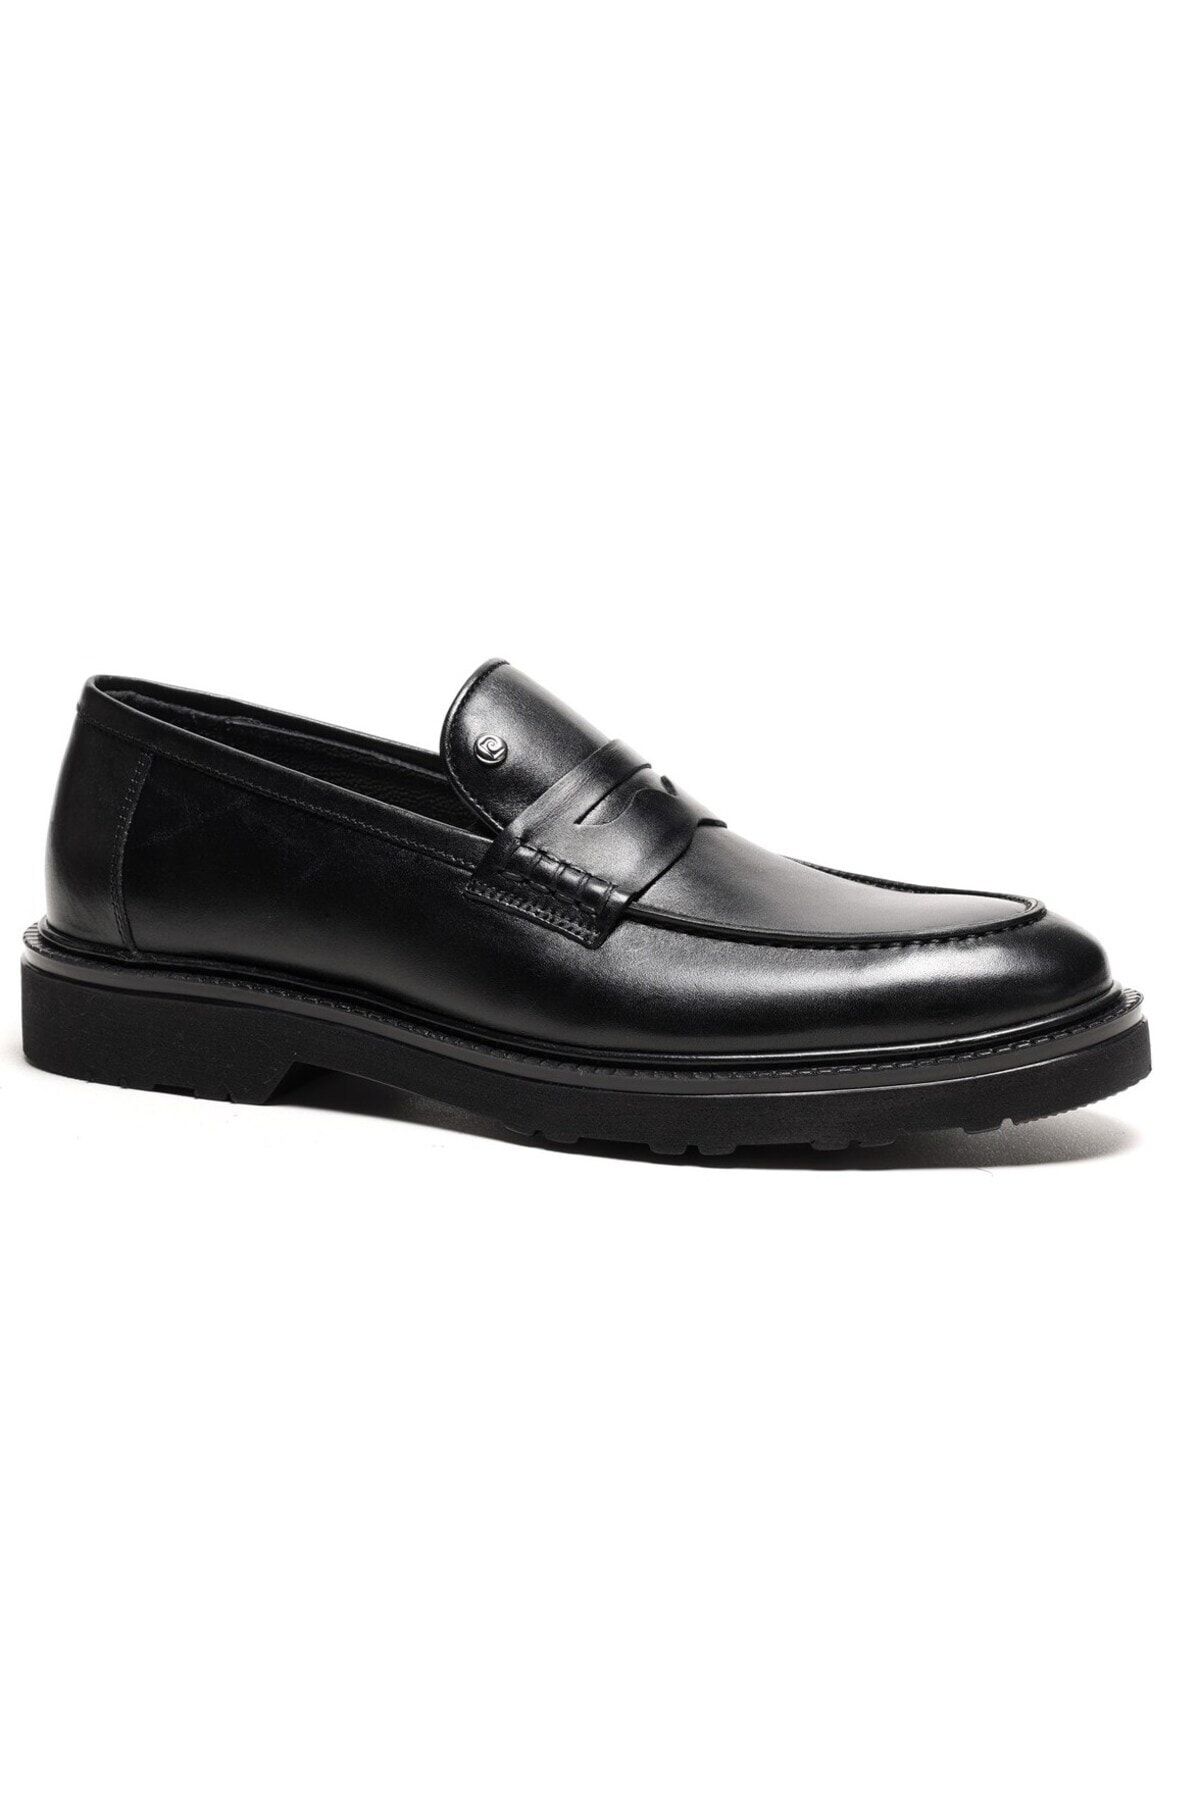 Pierre Cardin 241075 Siyah Kışlık Kauçuk Taban Erkek Ayakkabı